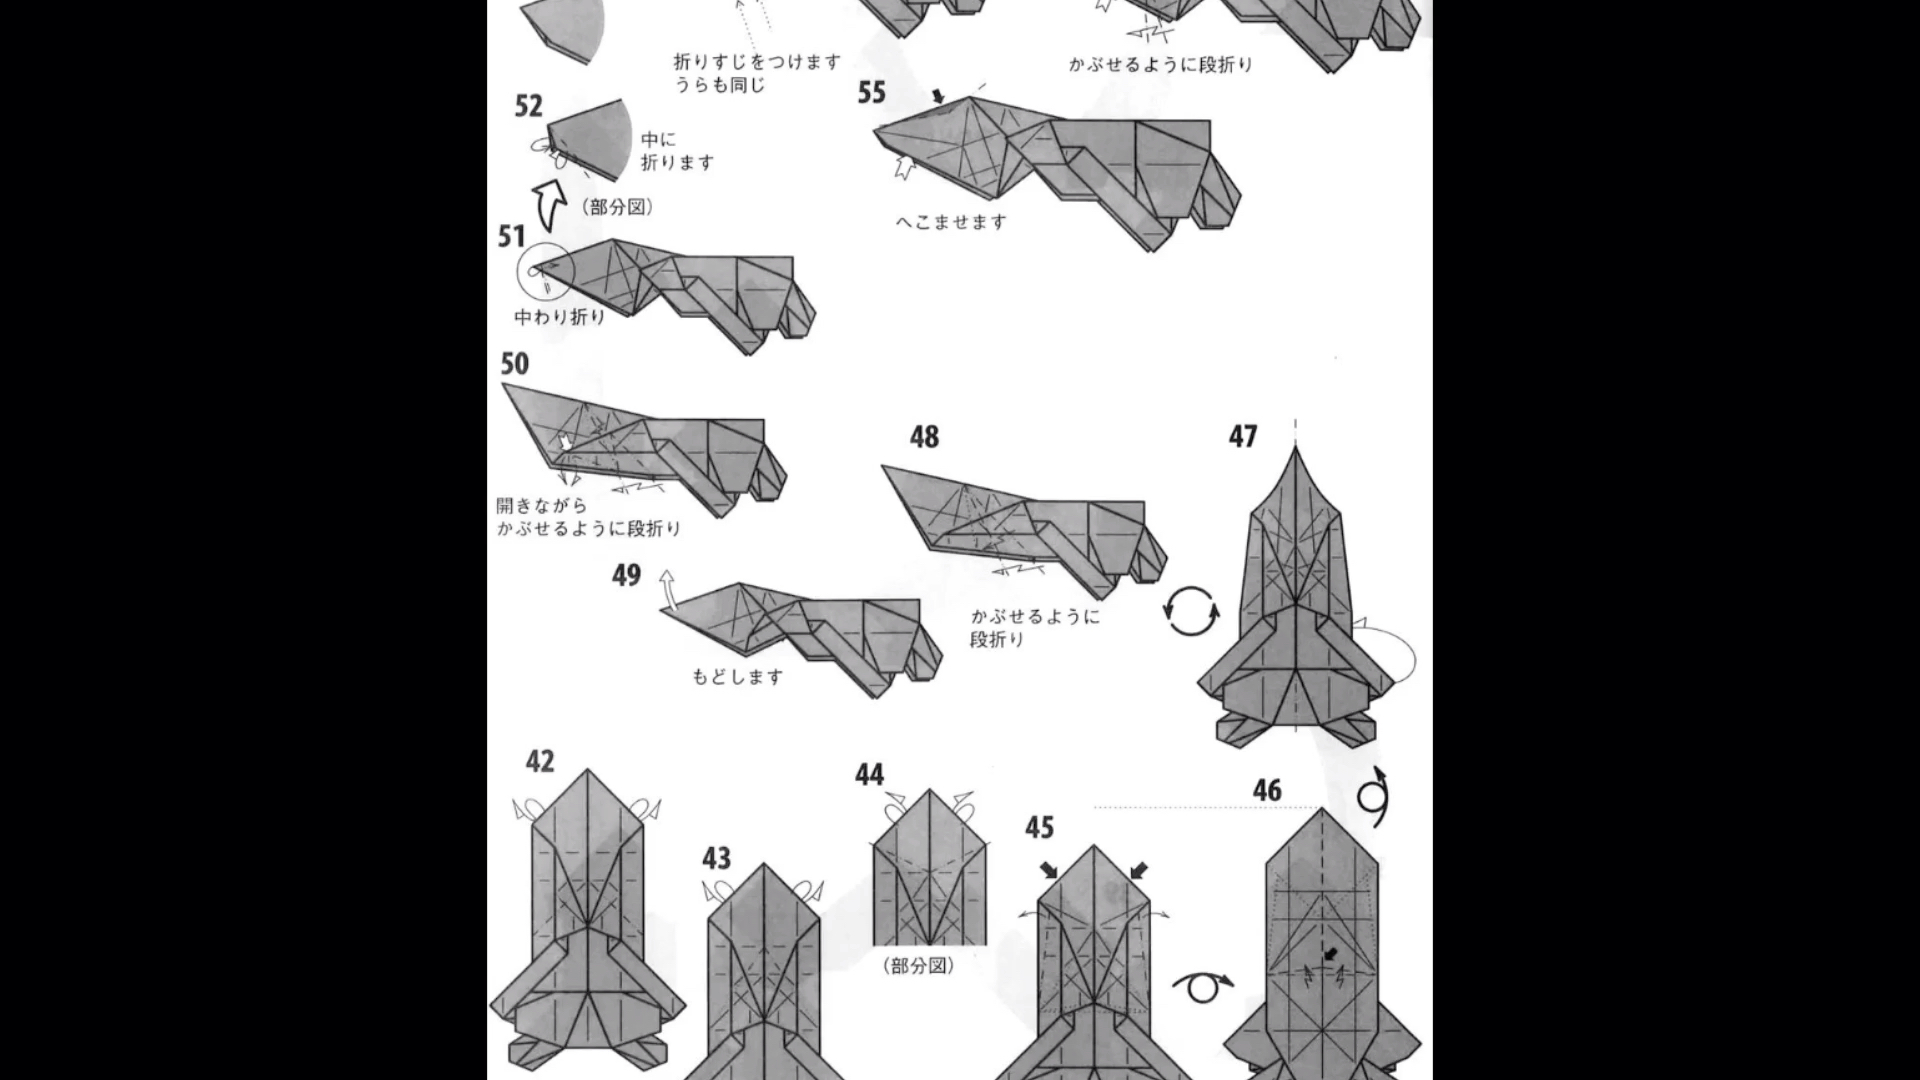 f22猛禽战斗机a4纸折法图片